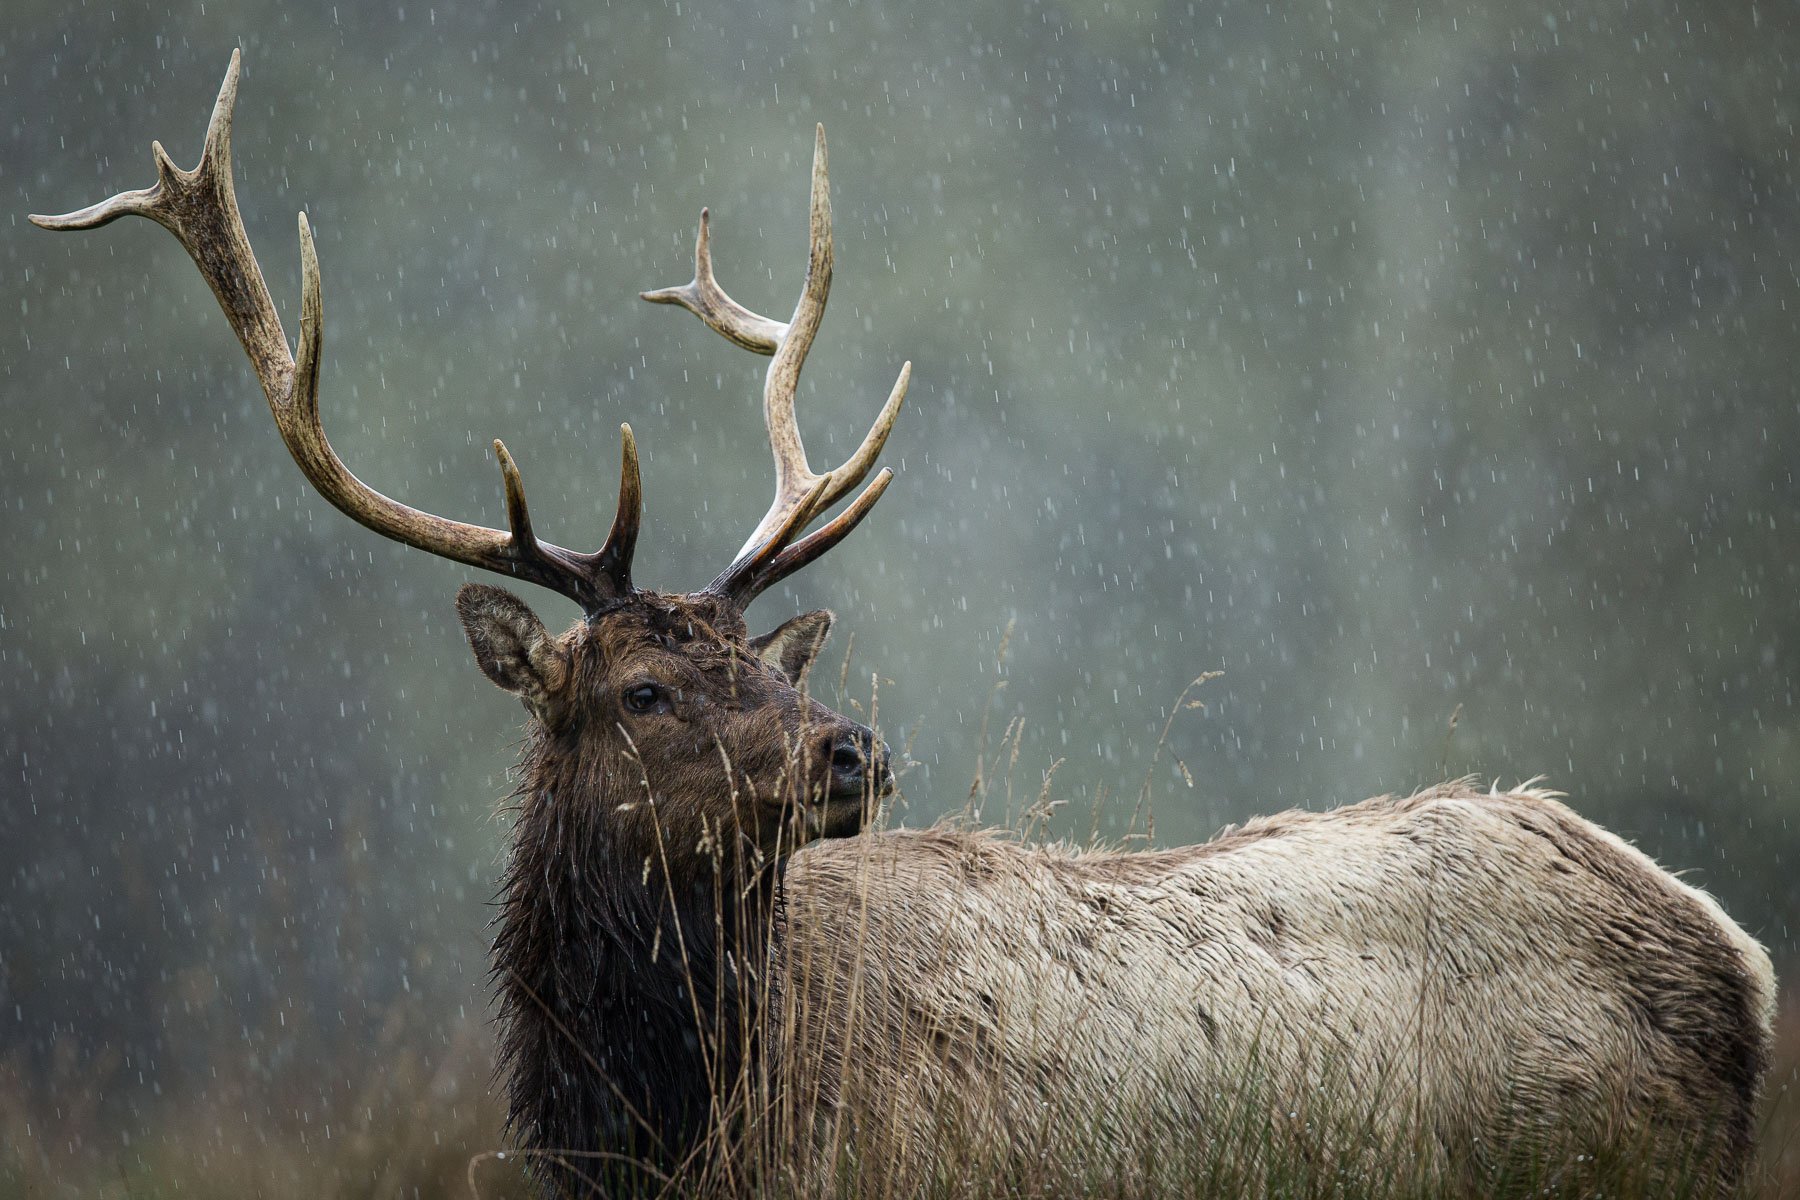 Roosevelt-Elk-Antlers-Bull-Rain-Storm-Close-Matthew-Polvorosa-Kline.jpg